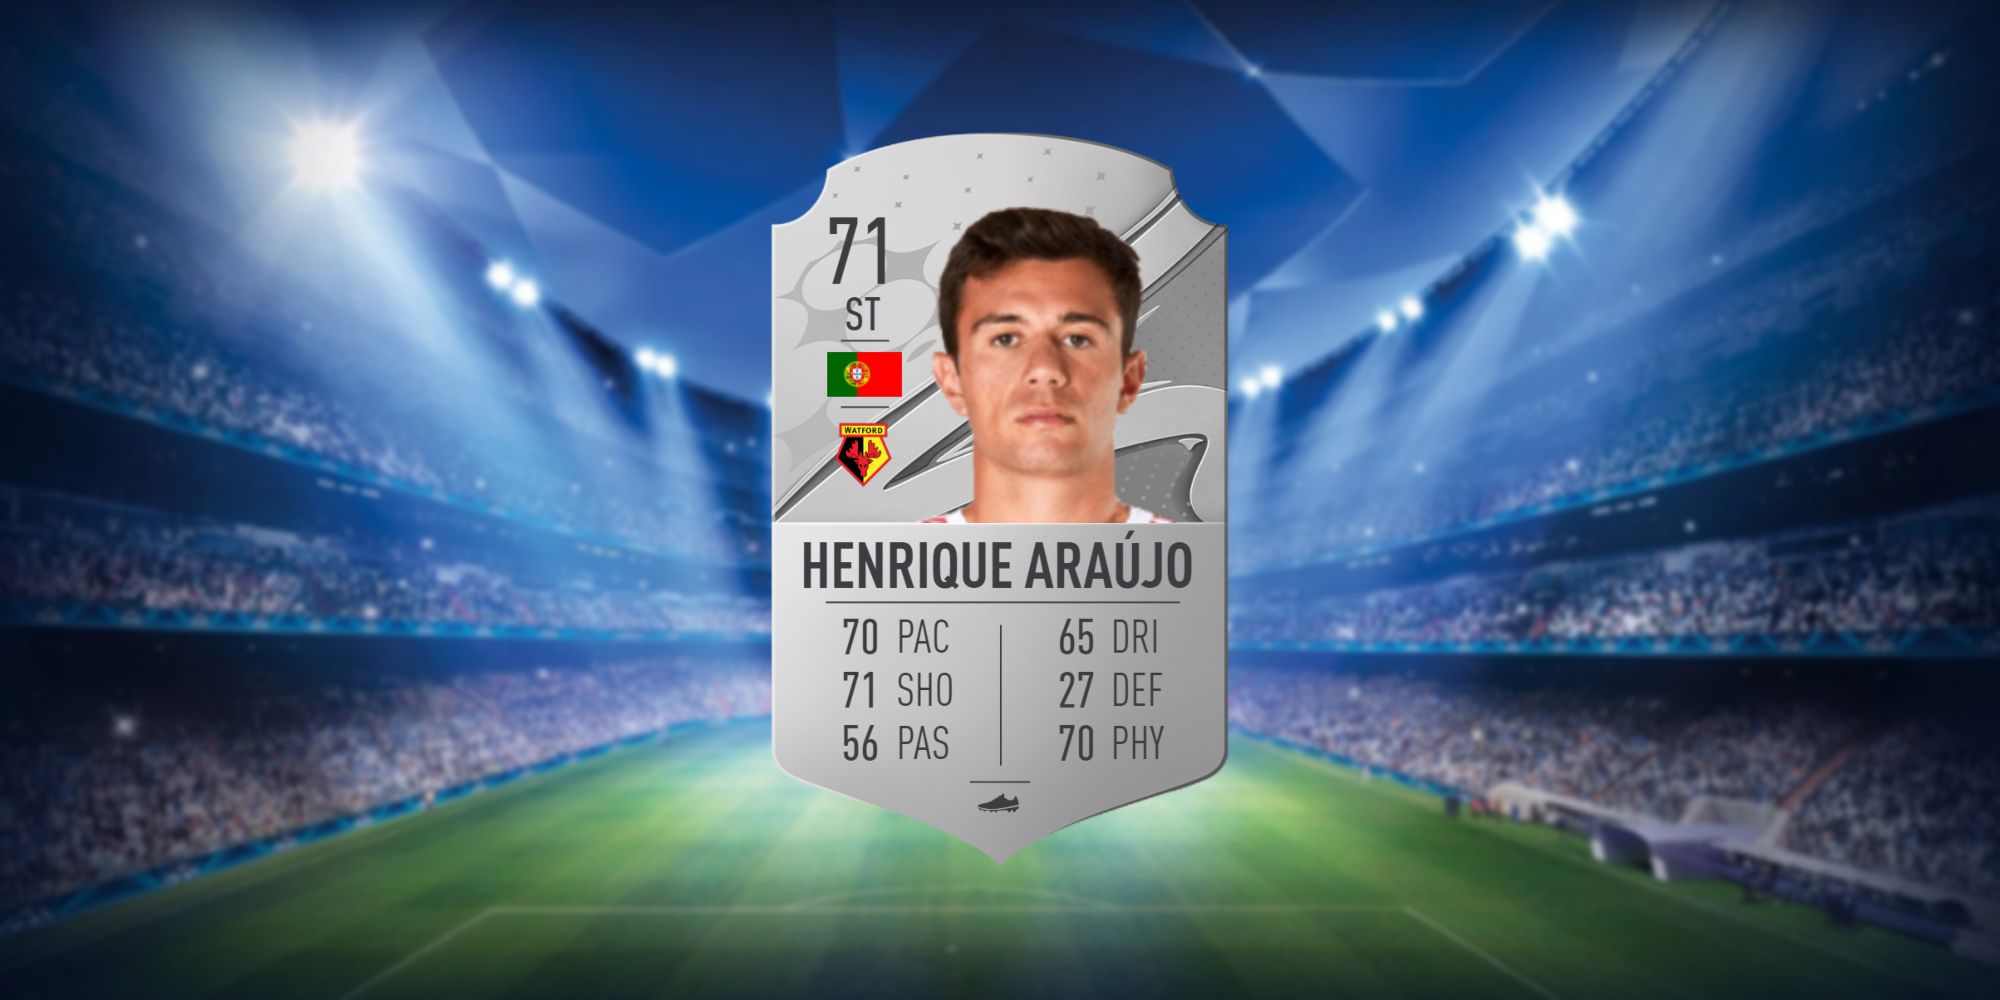 An image of Henrique Araújo's FIFA 23 Card